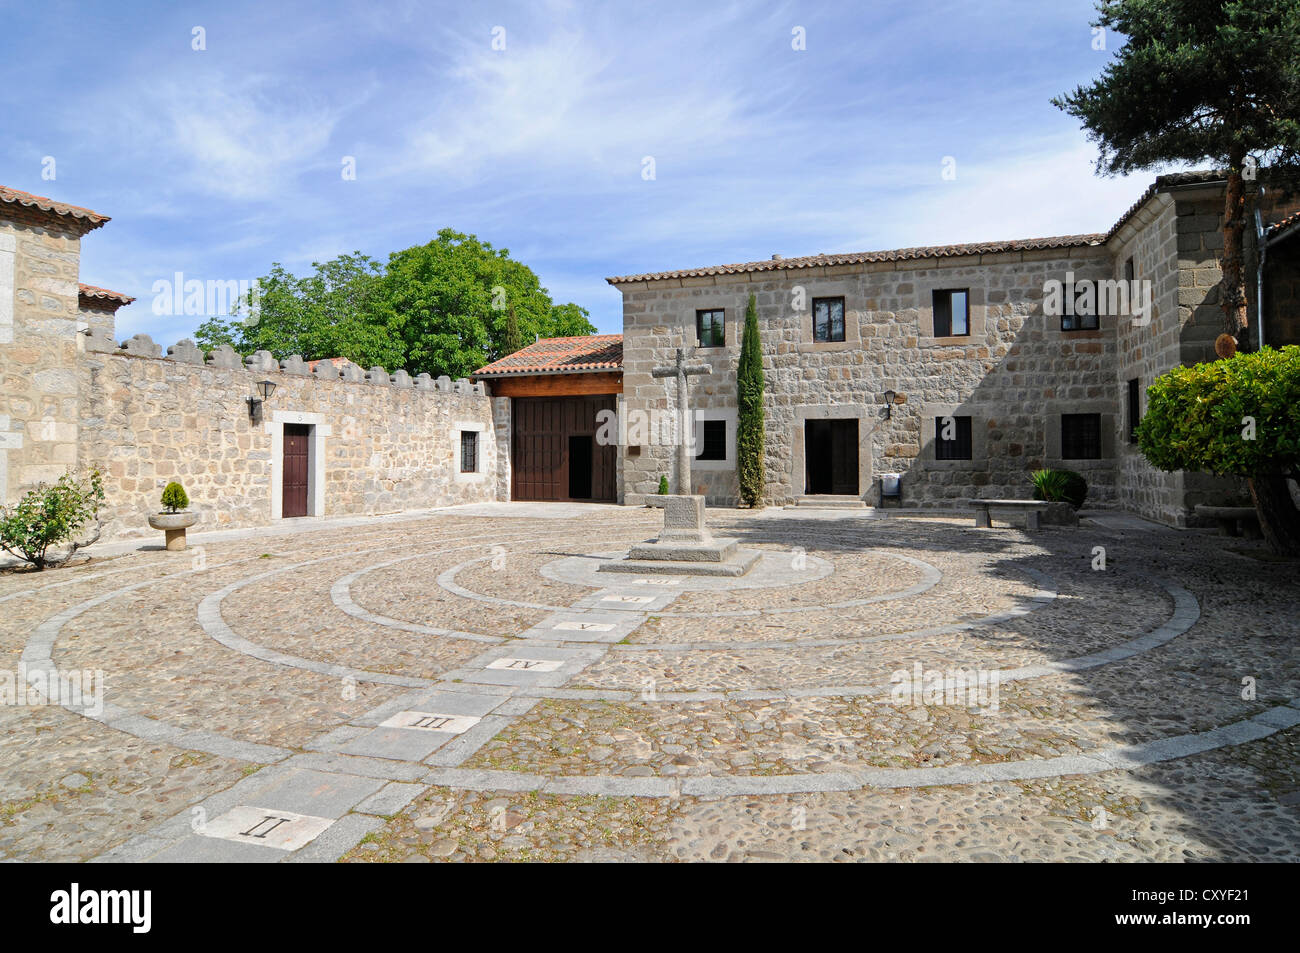 Monasterio de la Encarnacion, monastery, church, Avila, Castile-Leon, Spain, Europe Stock Photo